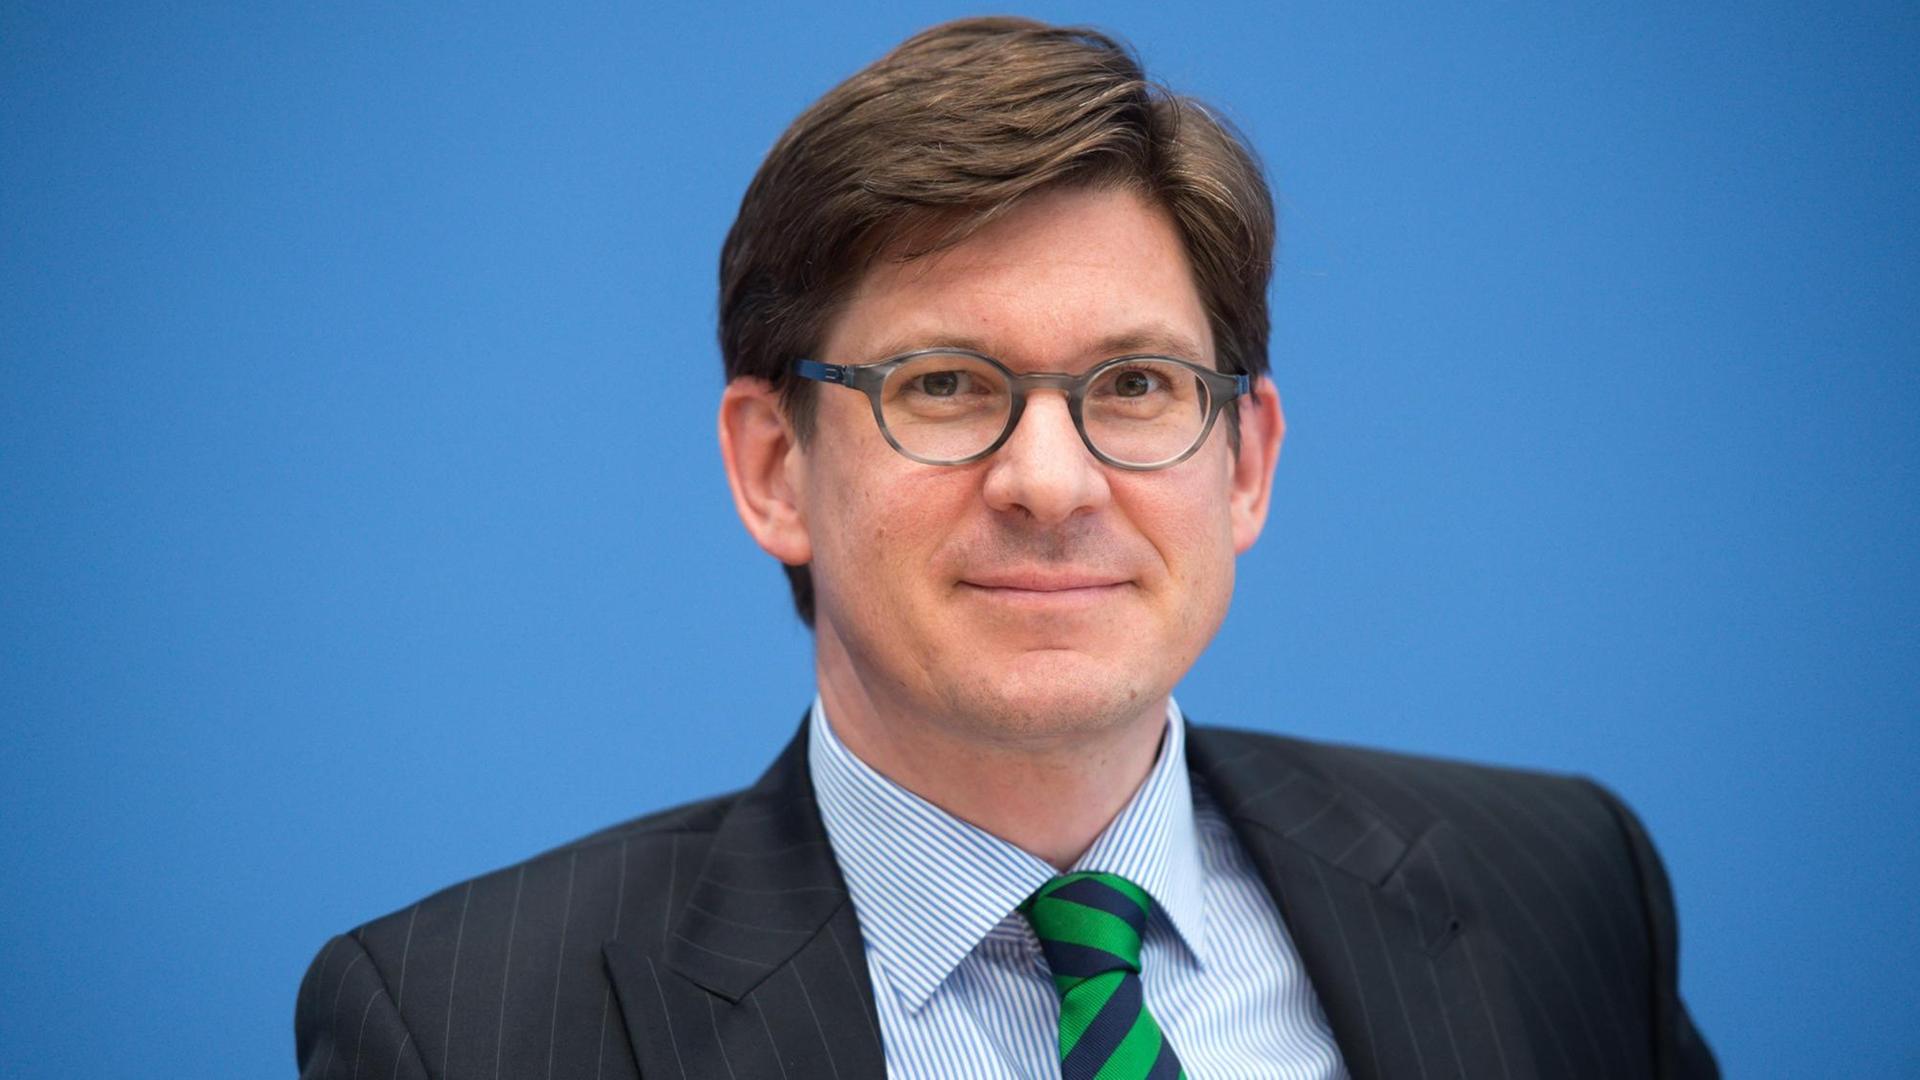 Ole Schröder, Parlamentarischer Staatssekretär im Bundesinnenministerium, in Anzug und mit Brille vor einer blauen Wand sitzend